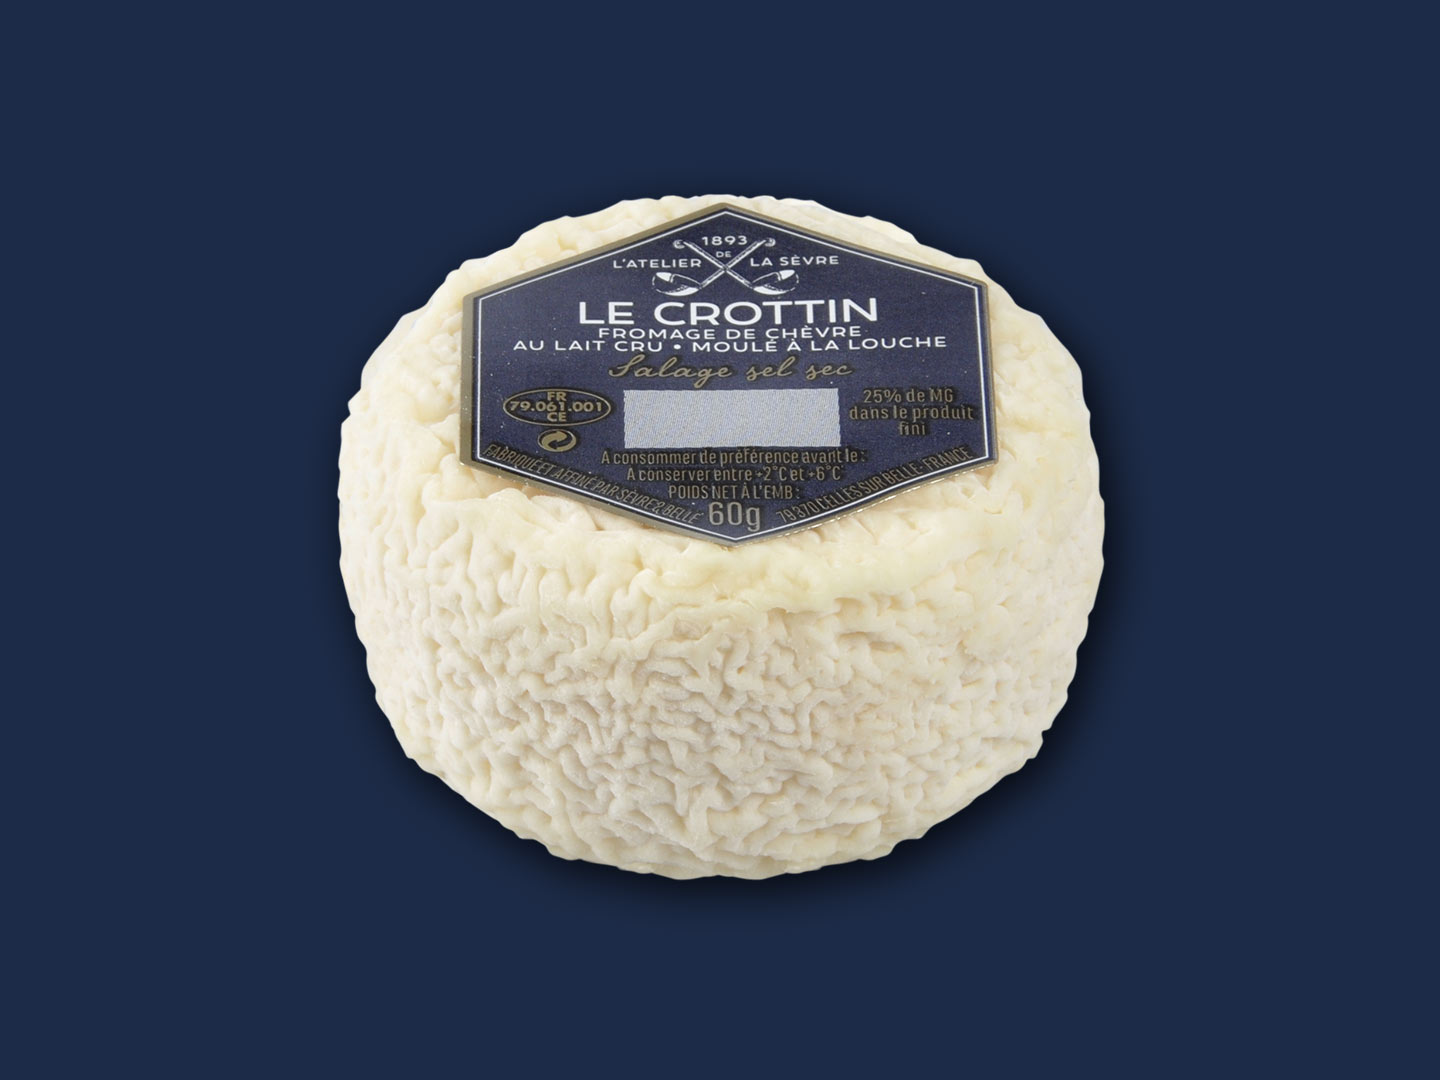 Le Crottin 60g - fromage de chèvre au lait cru - moulé à la louche - Atelier de la sèvre